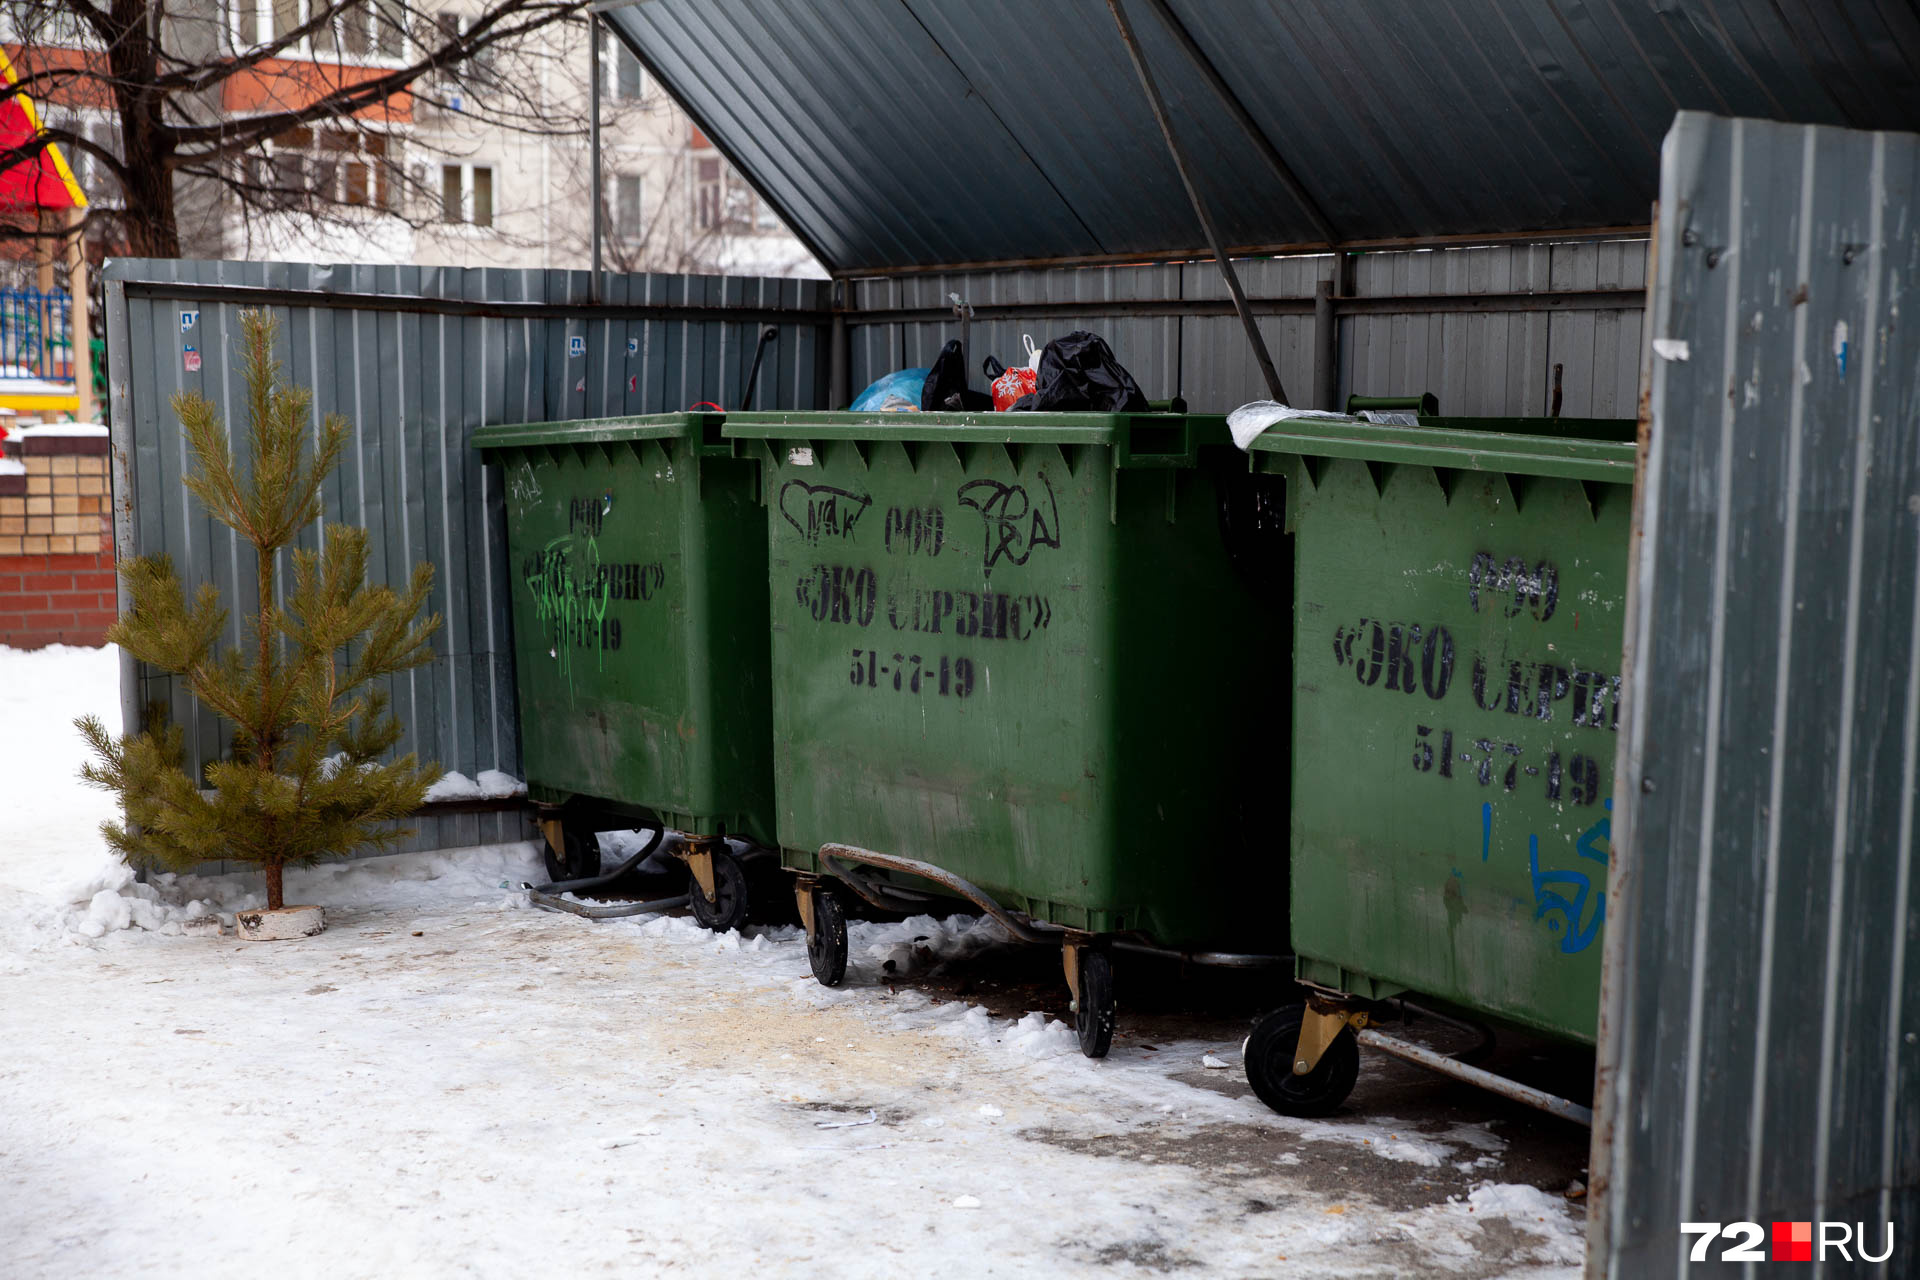 Специалисты «Тюменского экологического объединения» советуют оставлять деревья на контейнерных площадках, в местах для крупногабаритного мусора